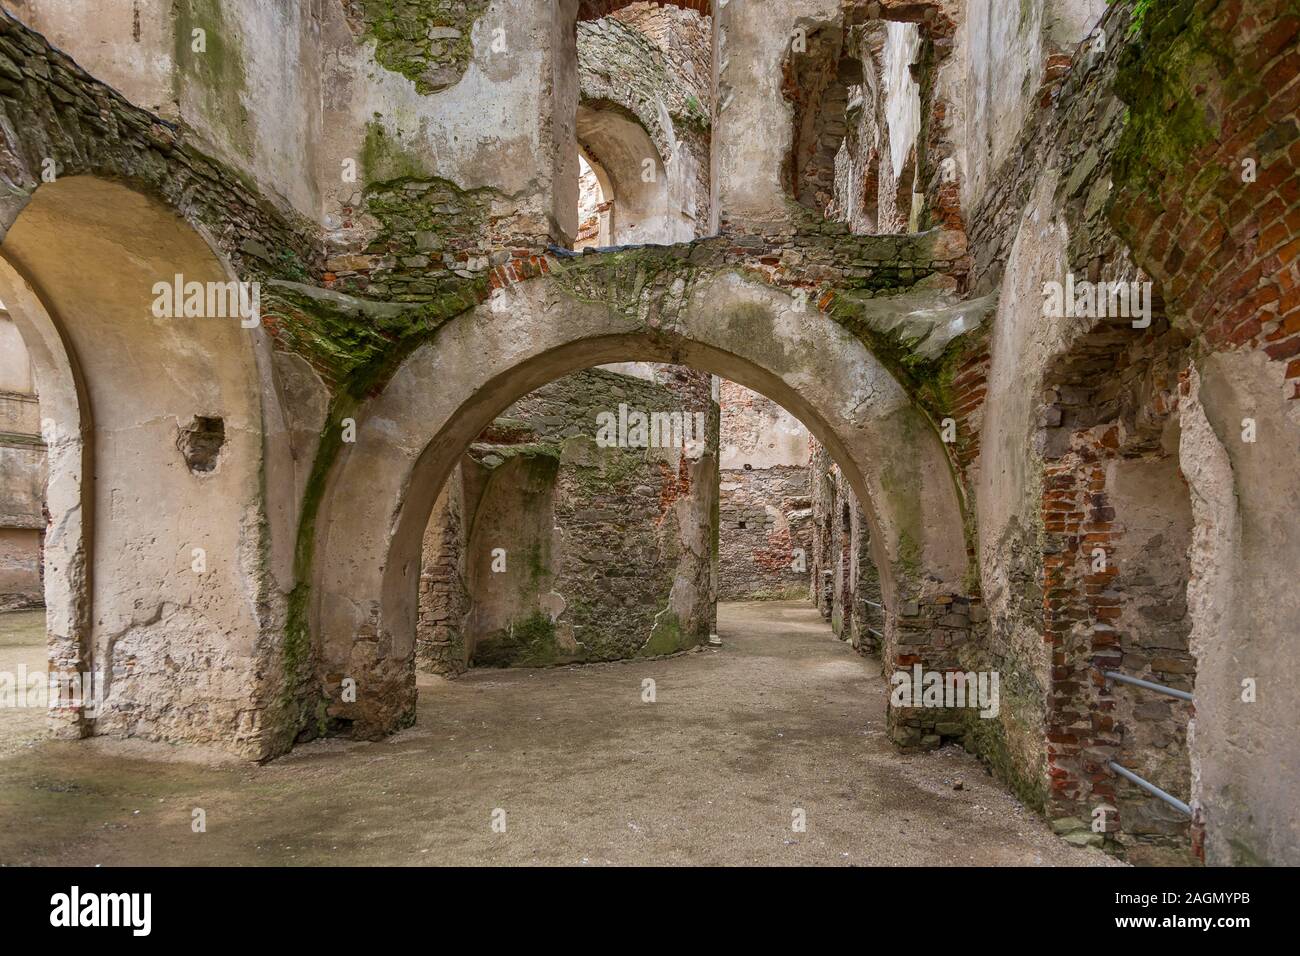 Ruins of the Krzyztopor palace in Ujezd, Poland. Stock Photo